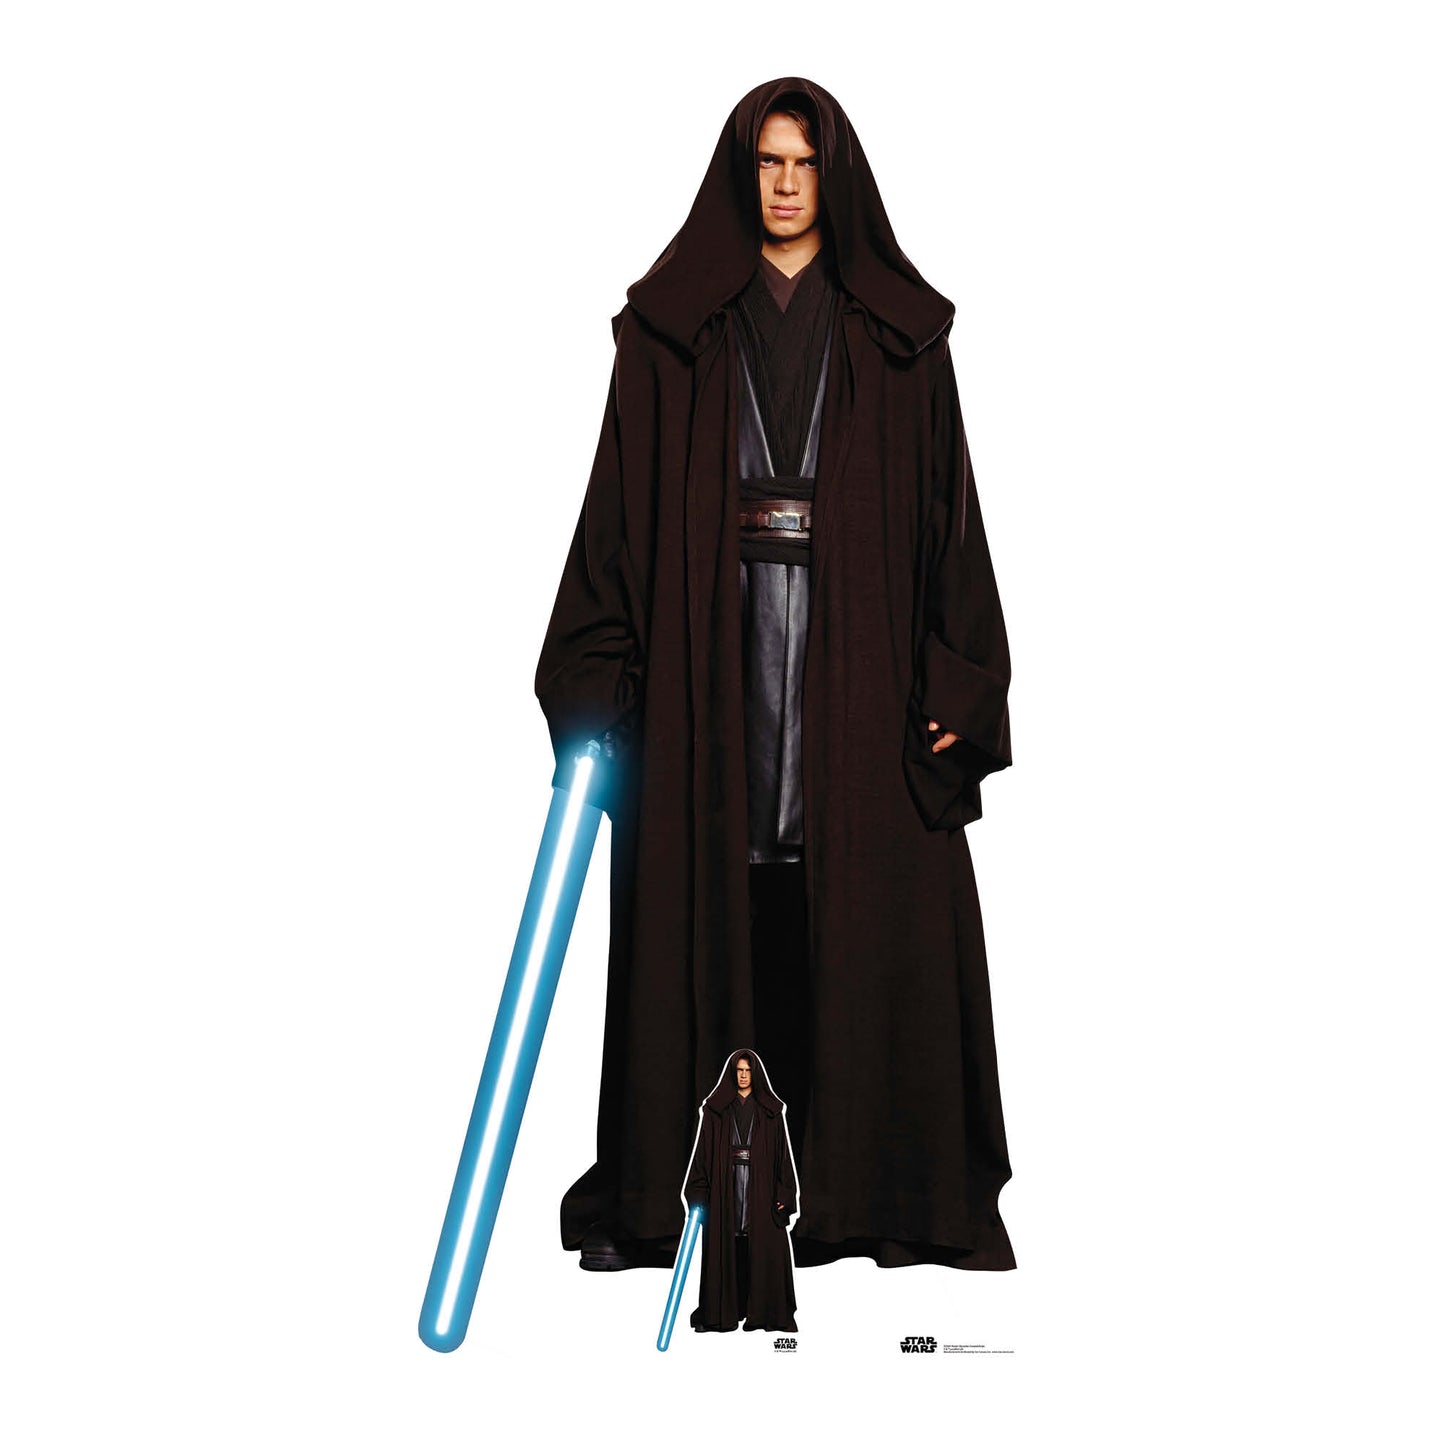 SC4381 Anakin Skywalker Hayden ChristensenStar Wars Cardboard Cut Out Height 196cm